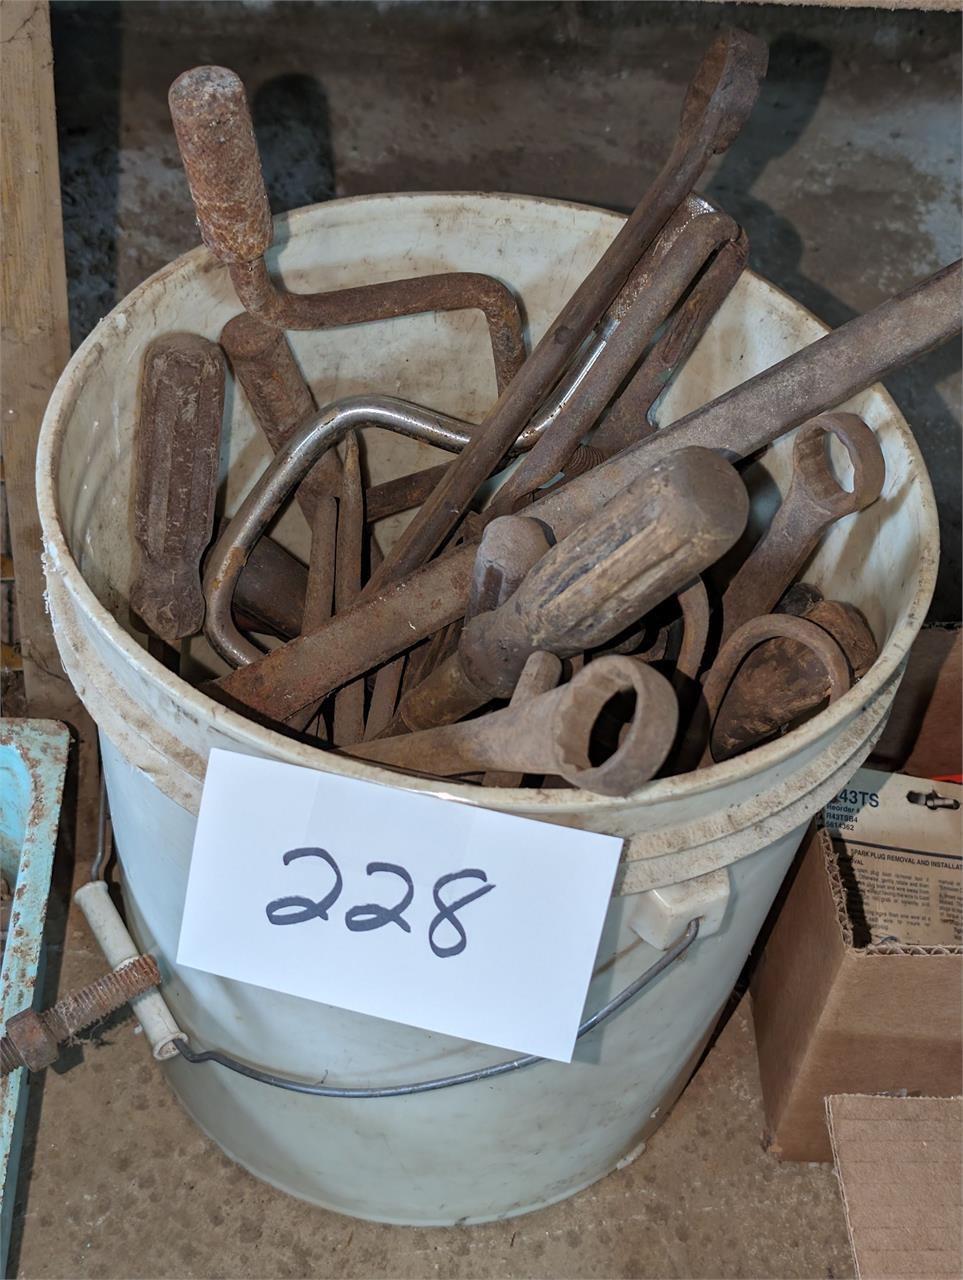 Bucket full of Older Tools